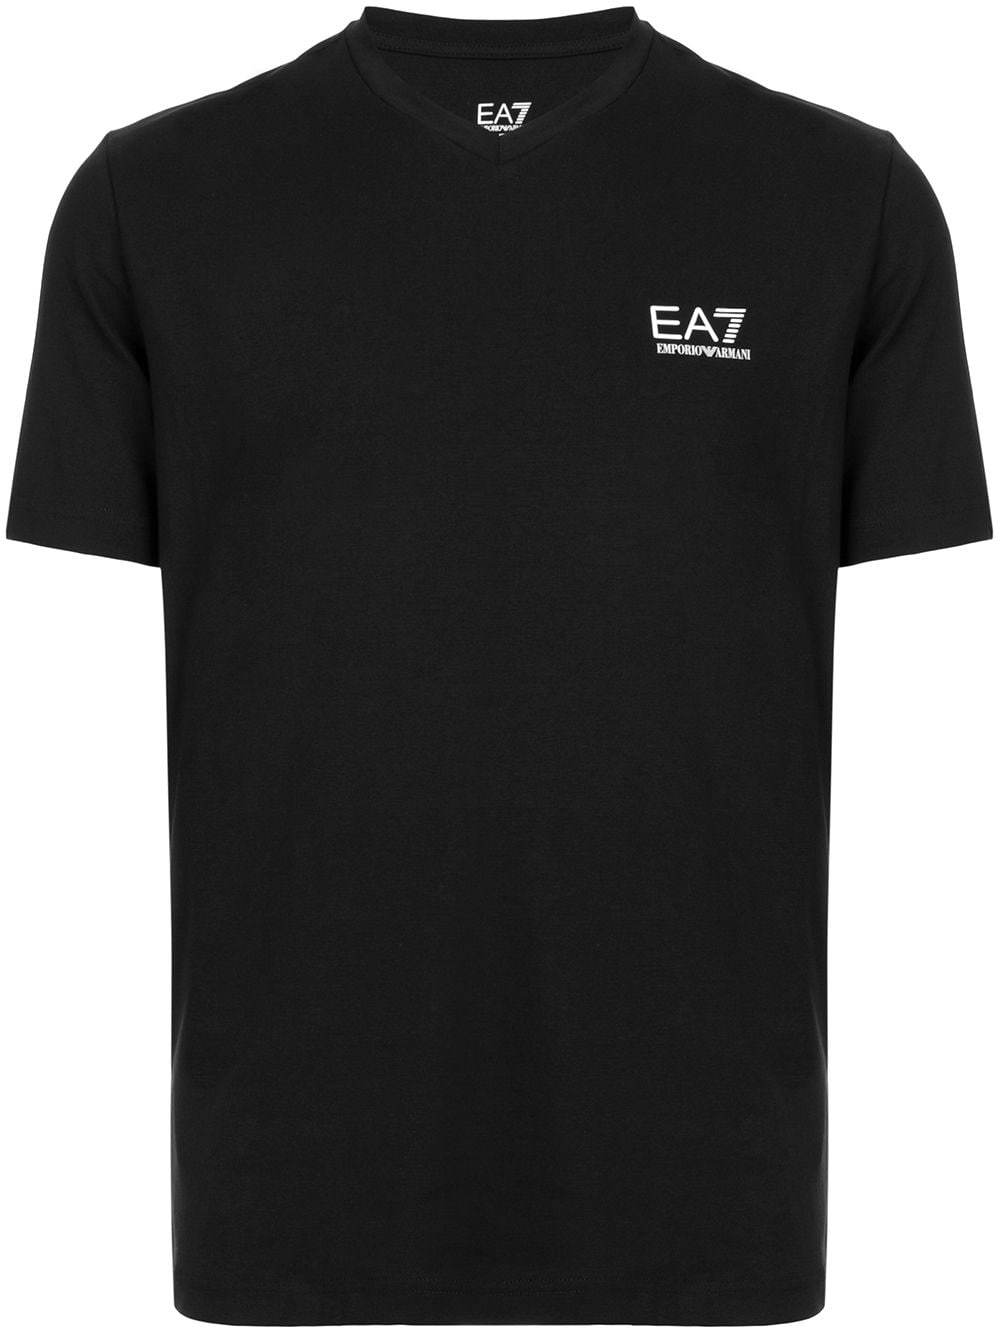 Ea7 Emporio Armani embroidered T-shirt - Black von Ea7 Emporio Armani